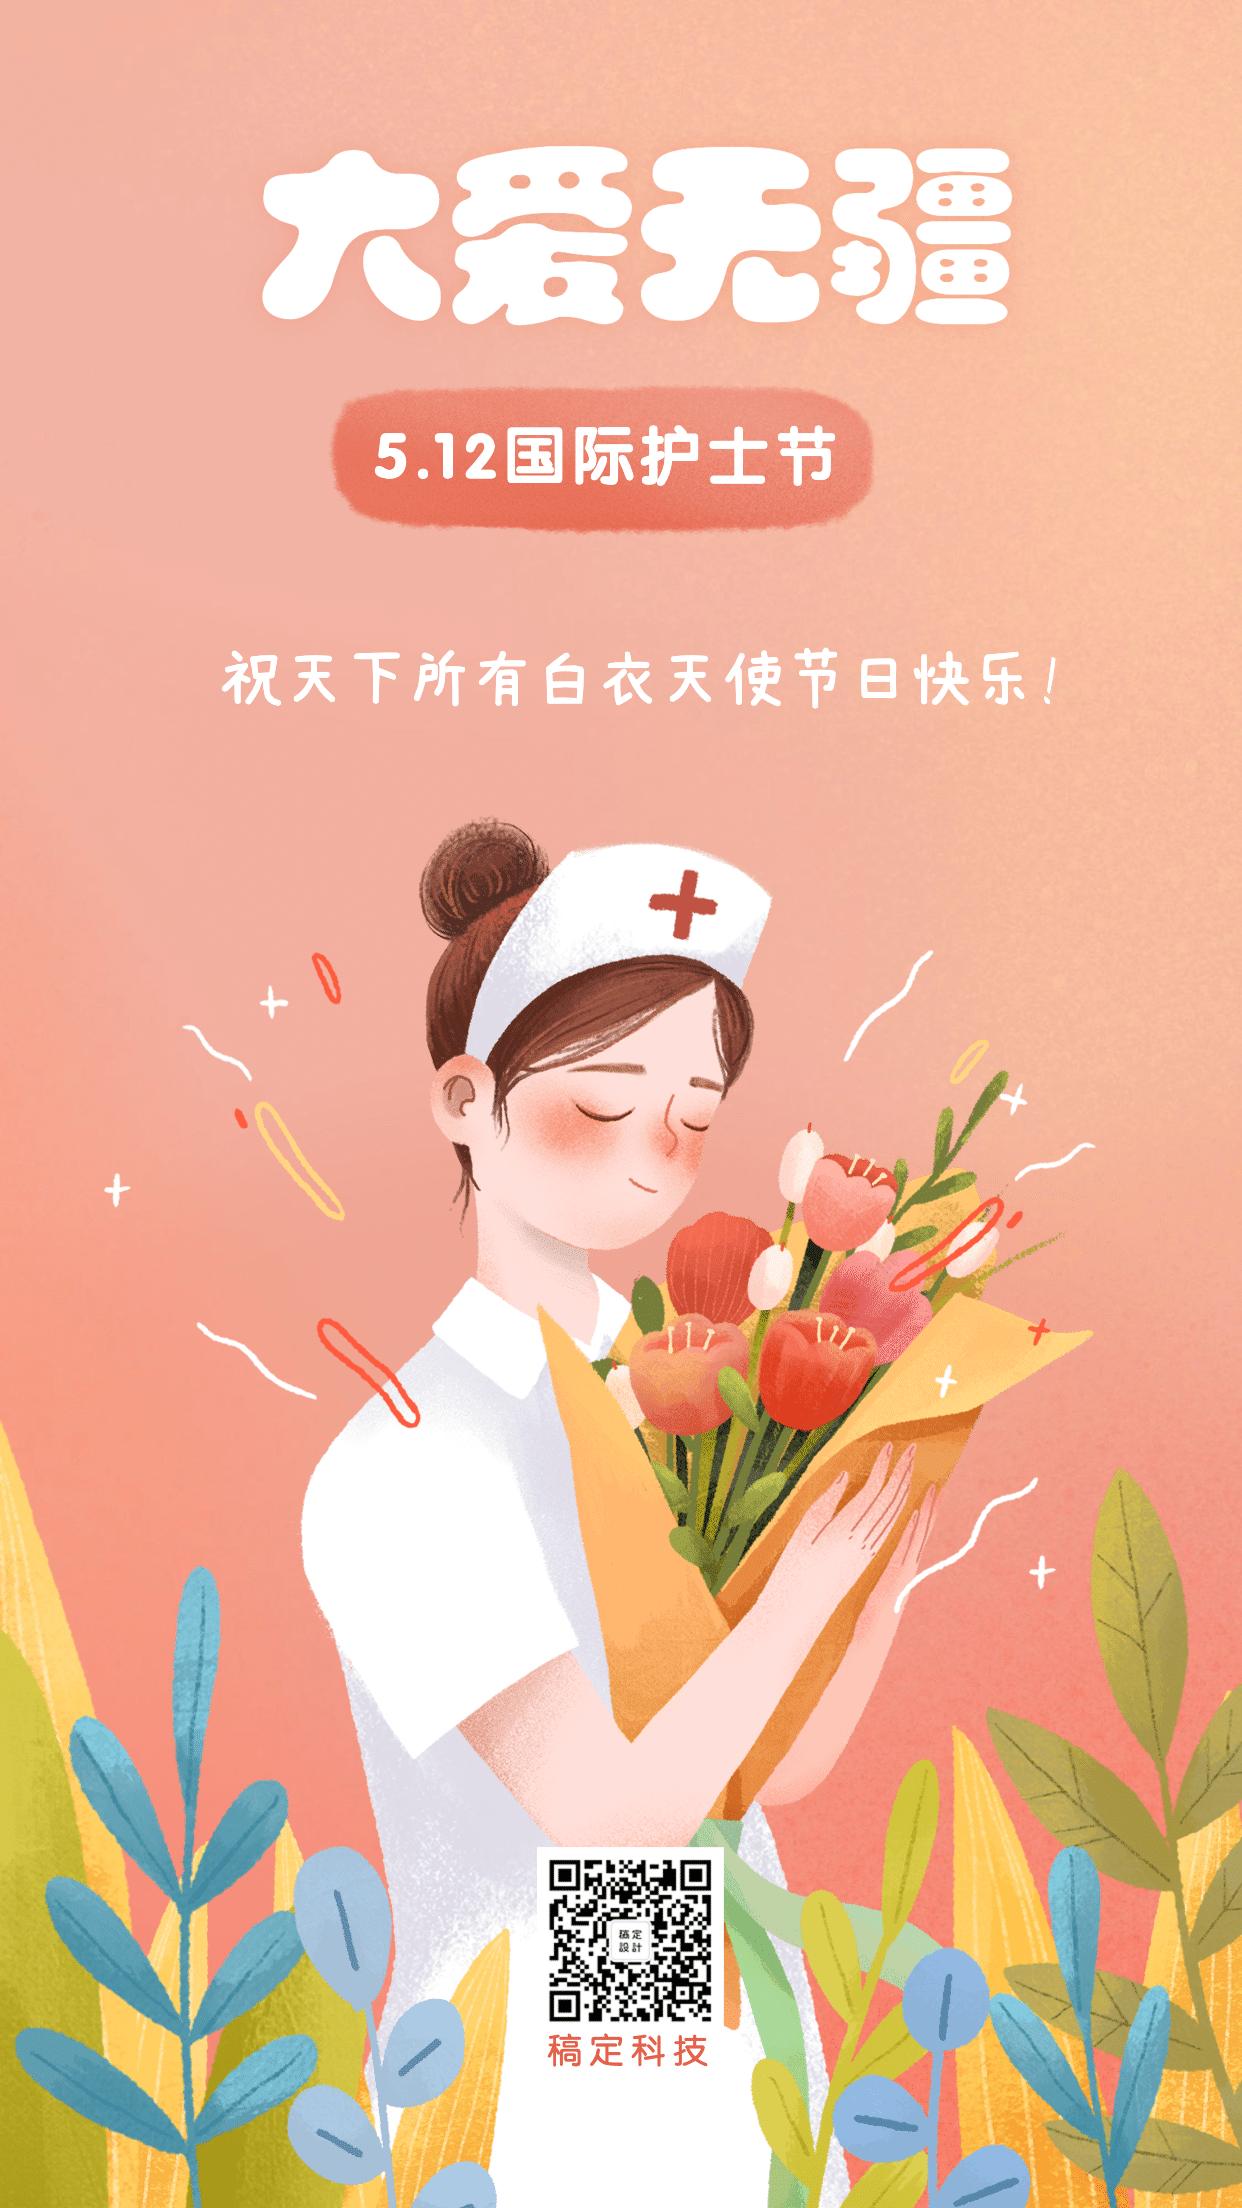 感恩5月12日国际护士节爱心天使卡通简约宣传海报图片下载 - 觅知网